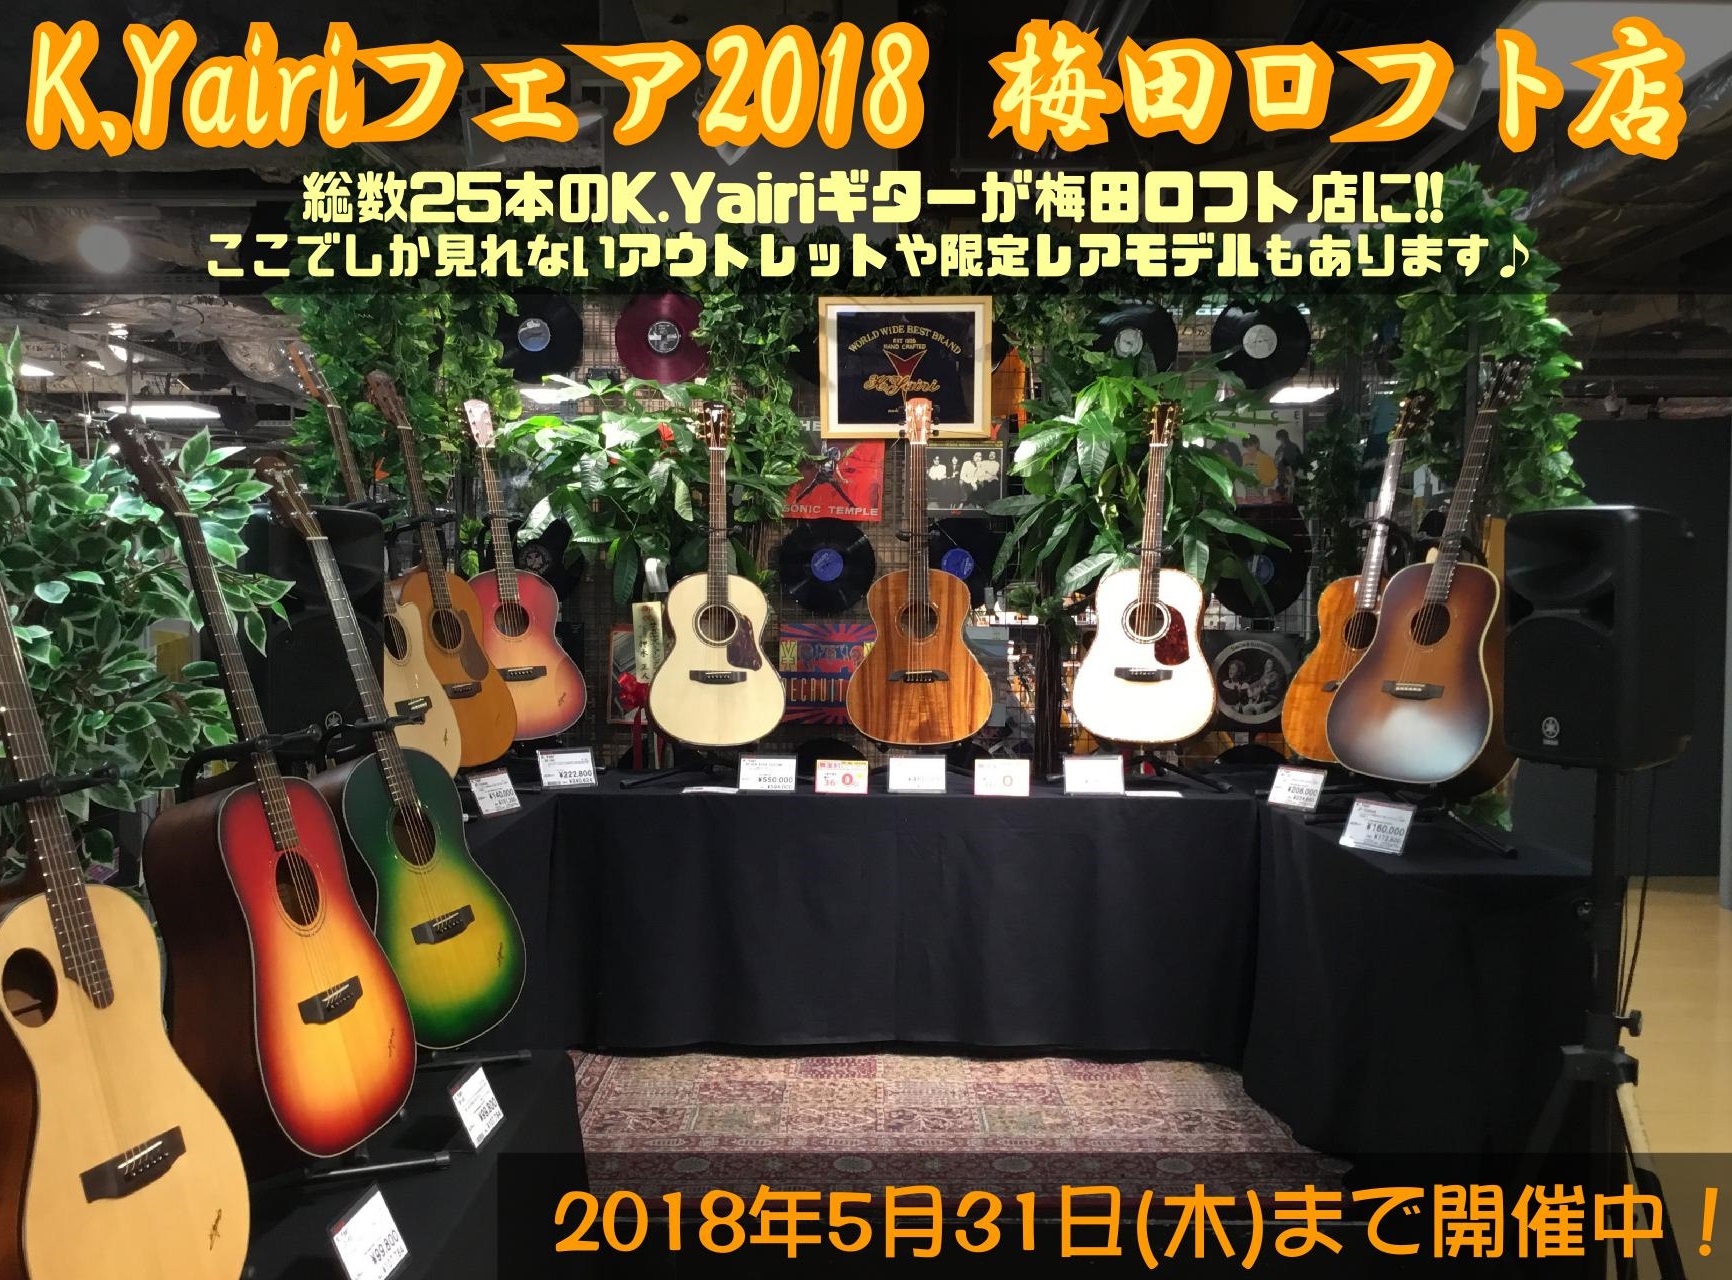 *2018/5/31まで K.Yairiフェアを開催いたします！ みなさんこんにちは！ 梅田ロフト店アコースティックギター担当の下森です！ 5月31日(木)までの期間、梅田ロフト店エレベーター前オープンスペースにてK.Yairiフェアを開催いたします♪ **K.Yairi（ヤイリギター）とは？ 生涯 […]